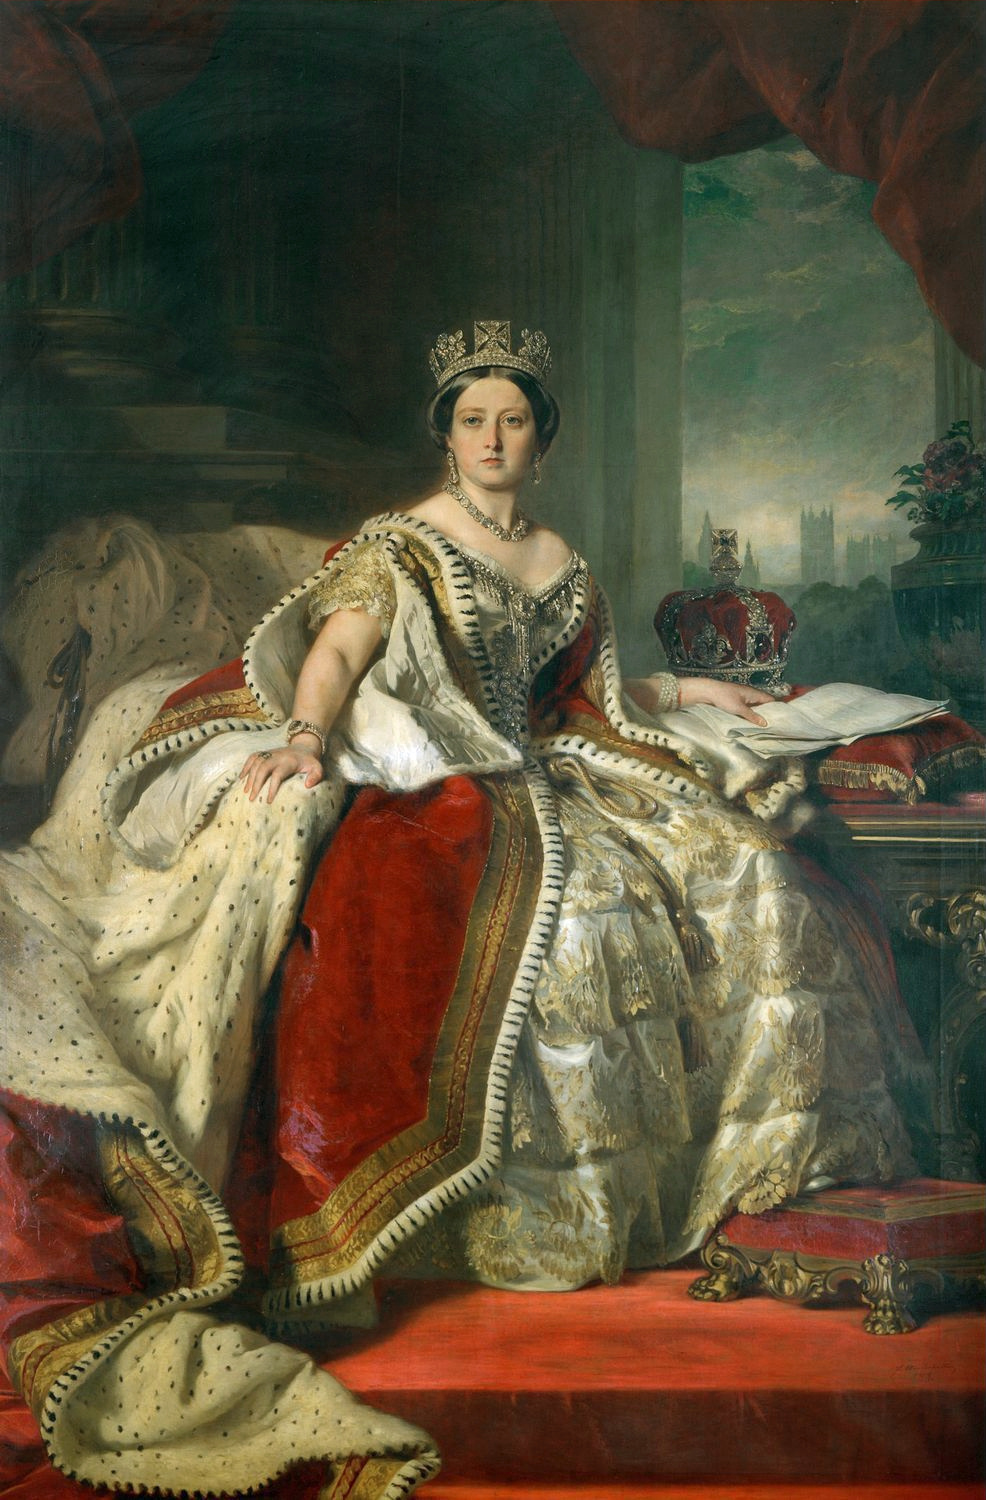 Portrait of Queen Victoria by Franz Xaver Winterhalter, 1859